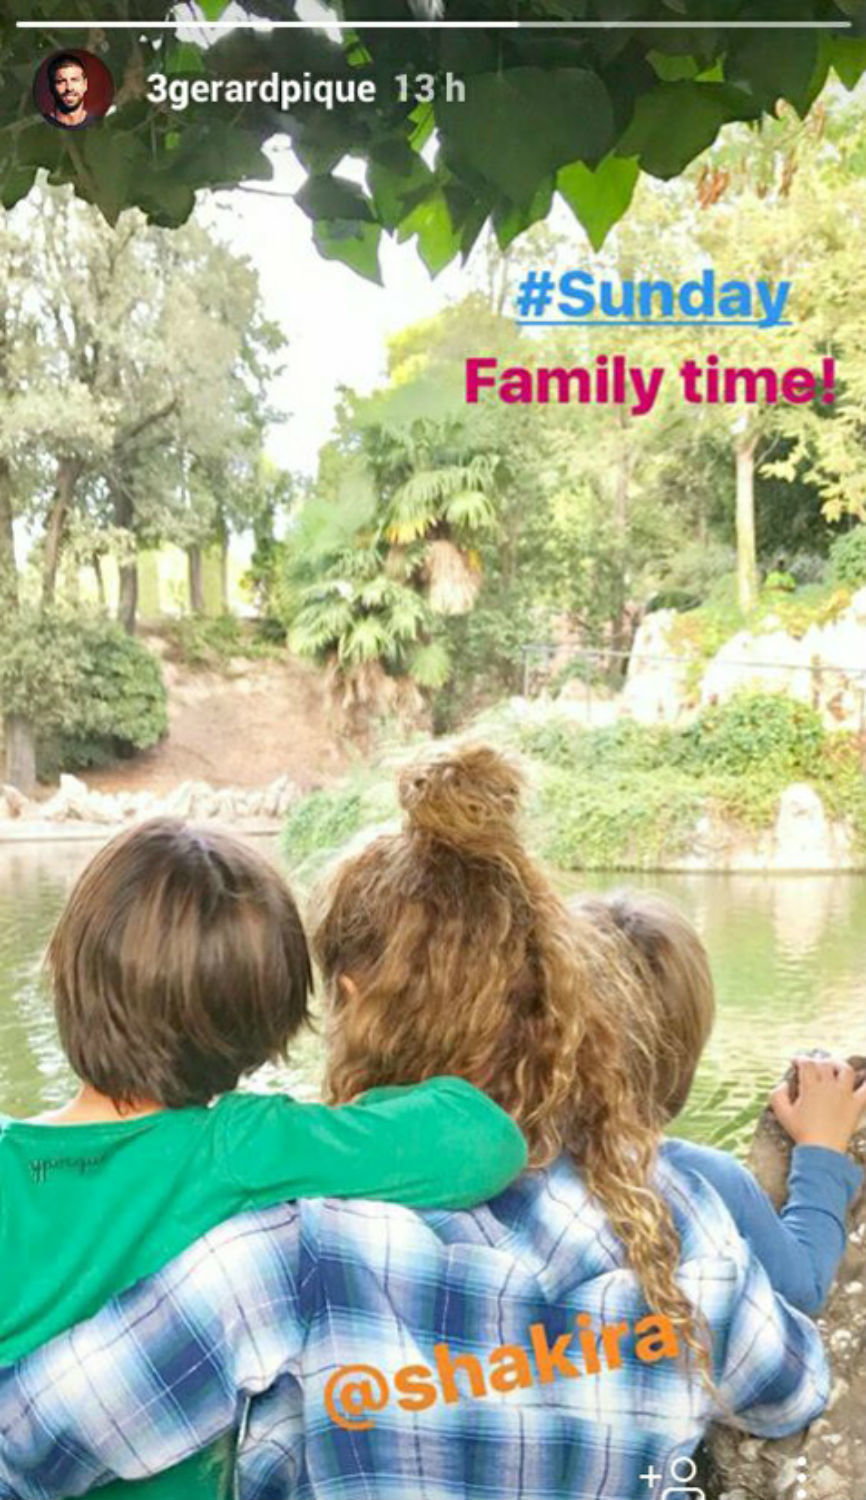 Shakira z dziećmi fot. Gerard Pique